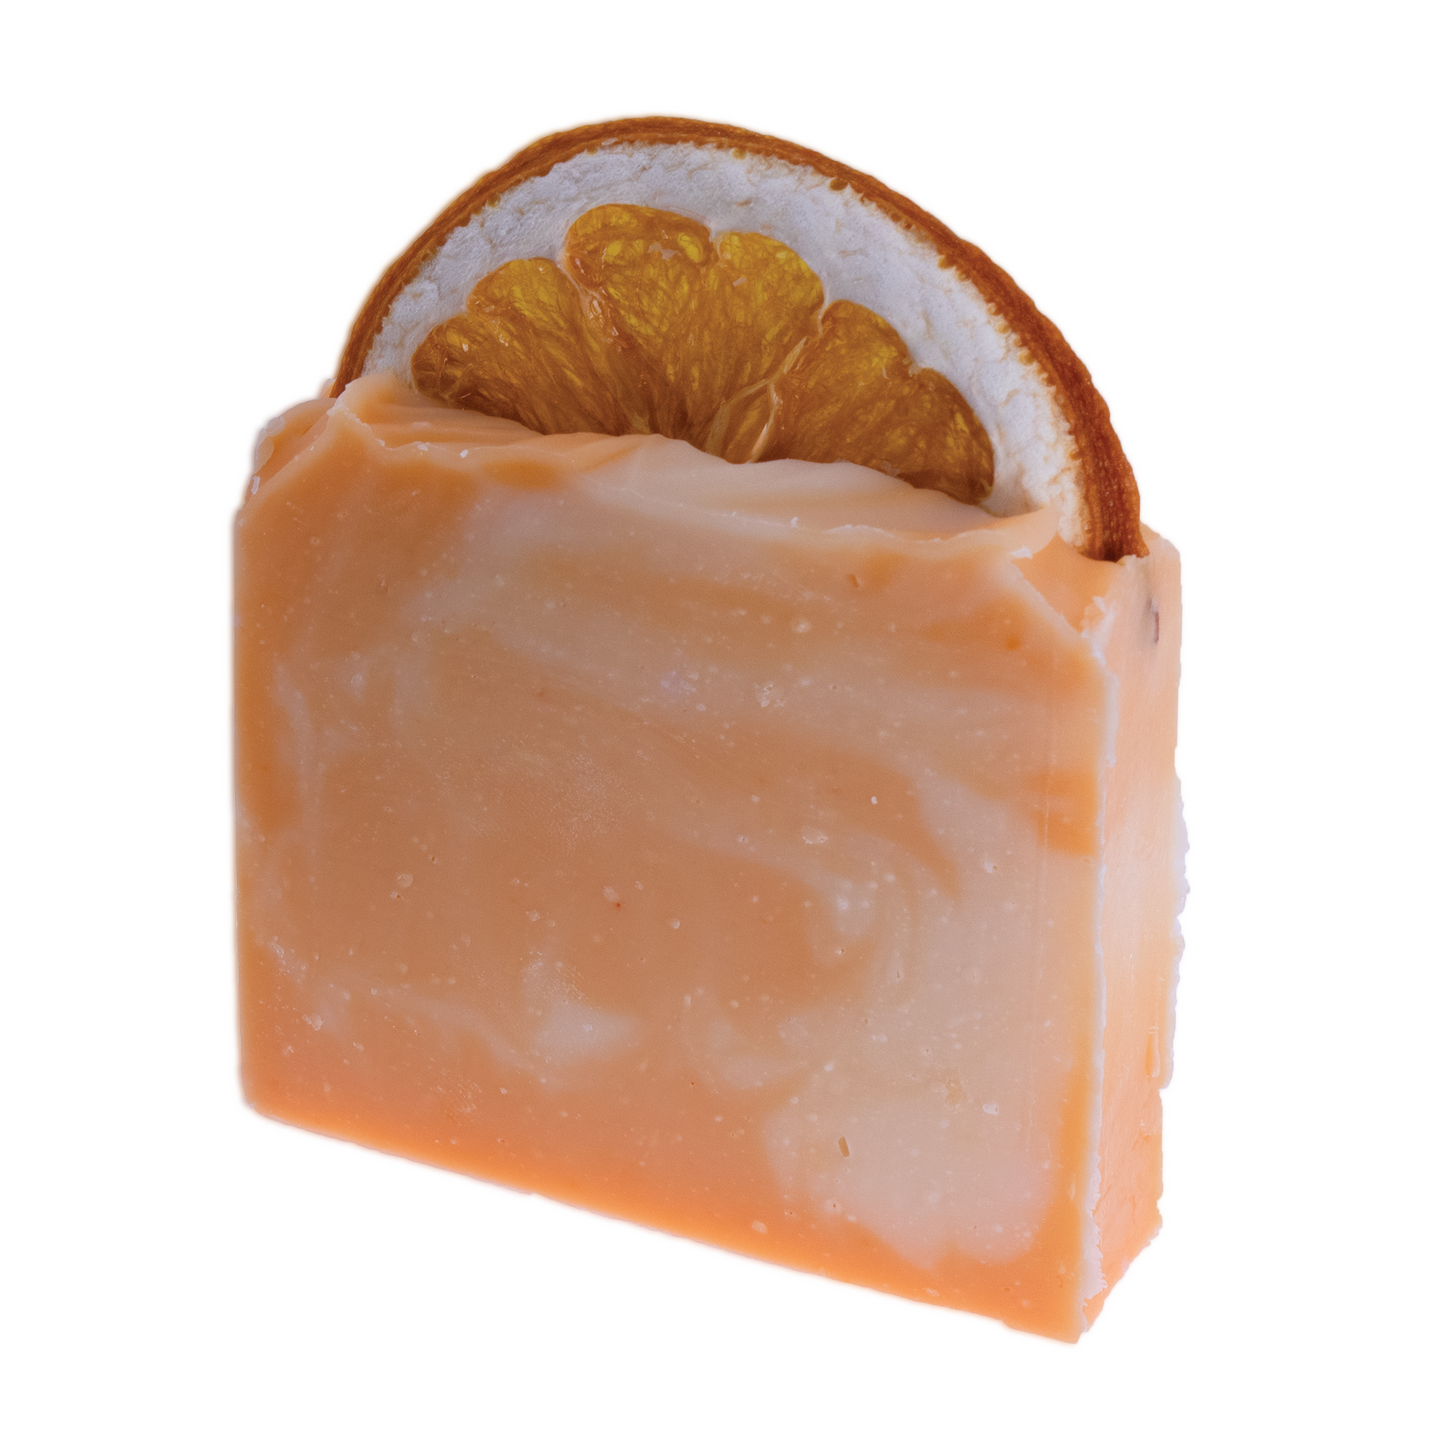 Orange & Bergamot Soap Body Naturals